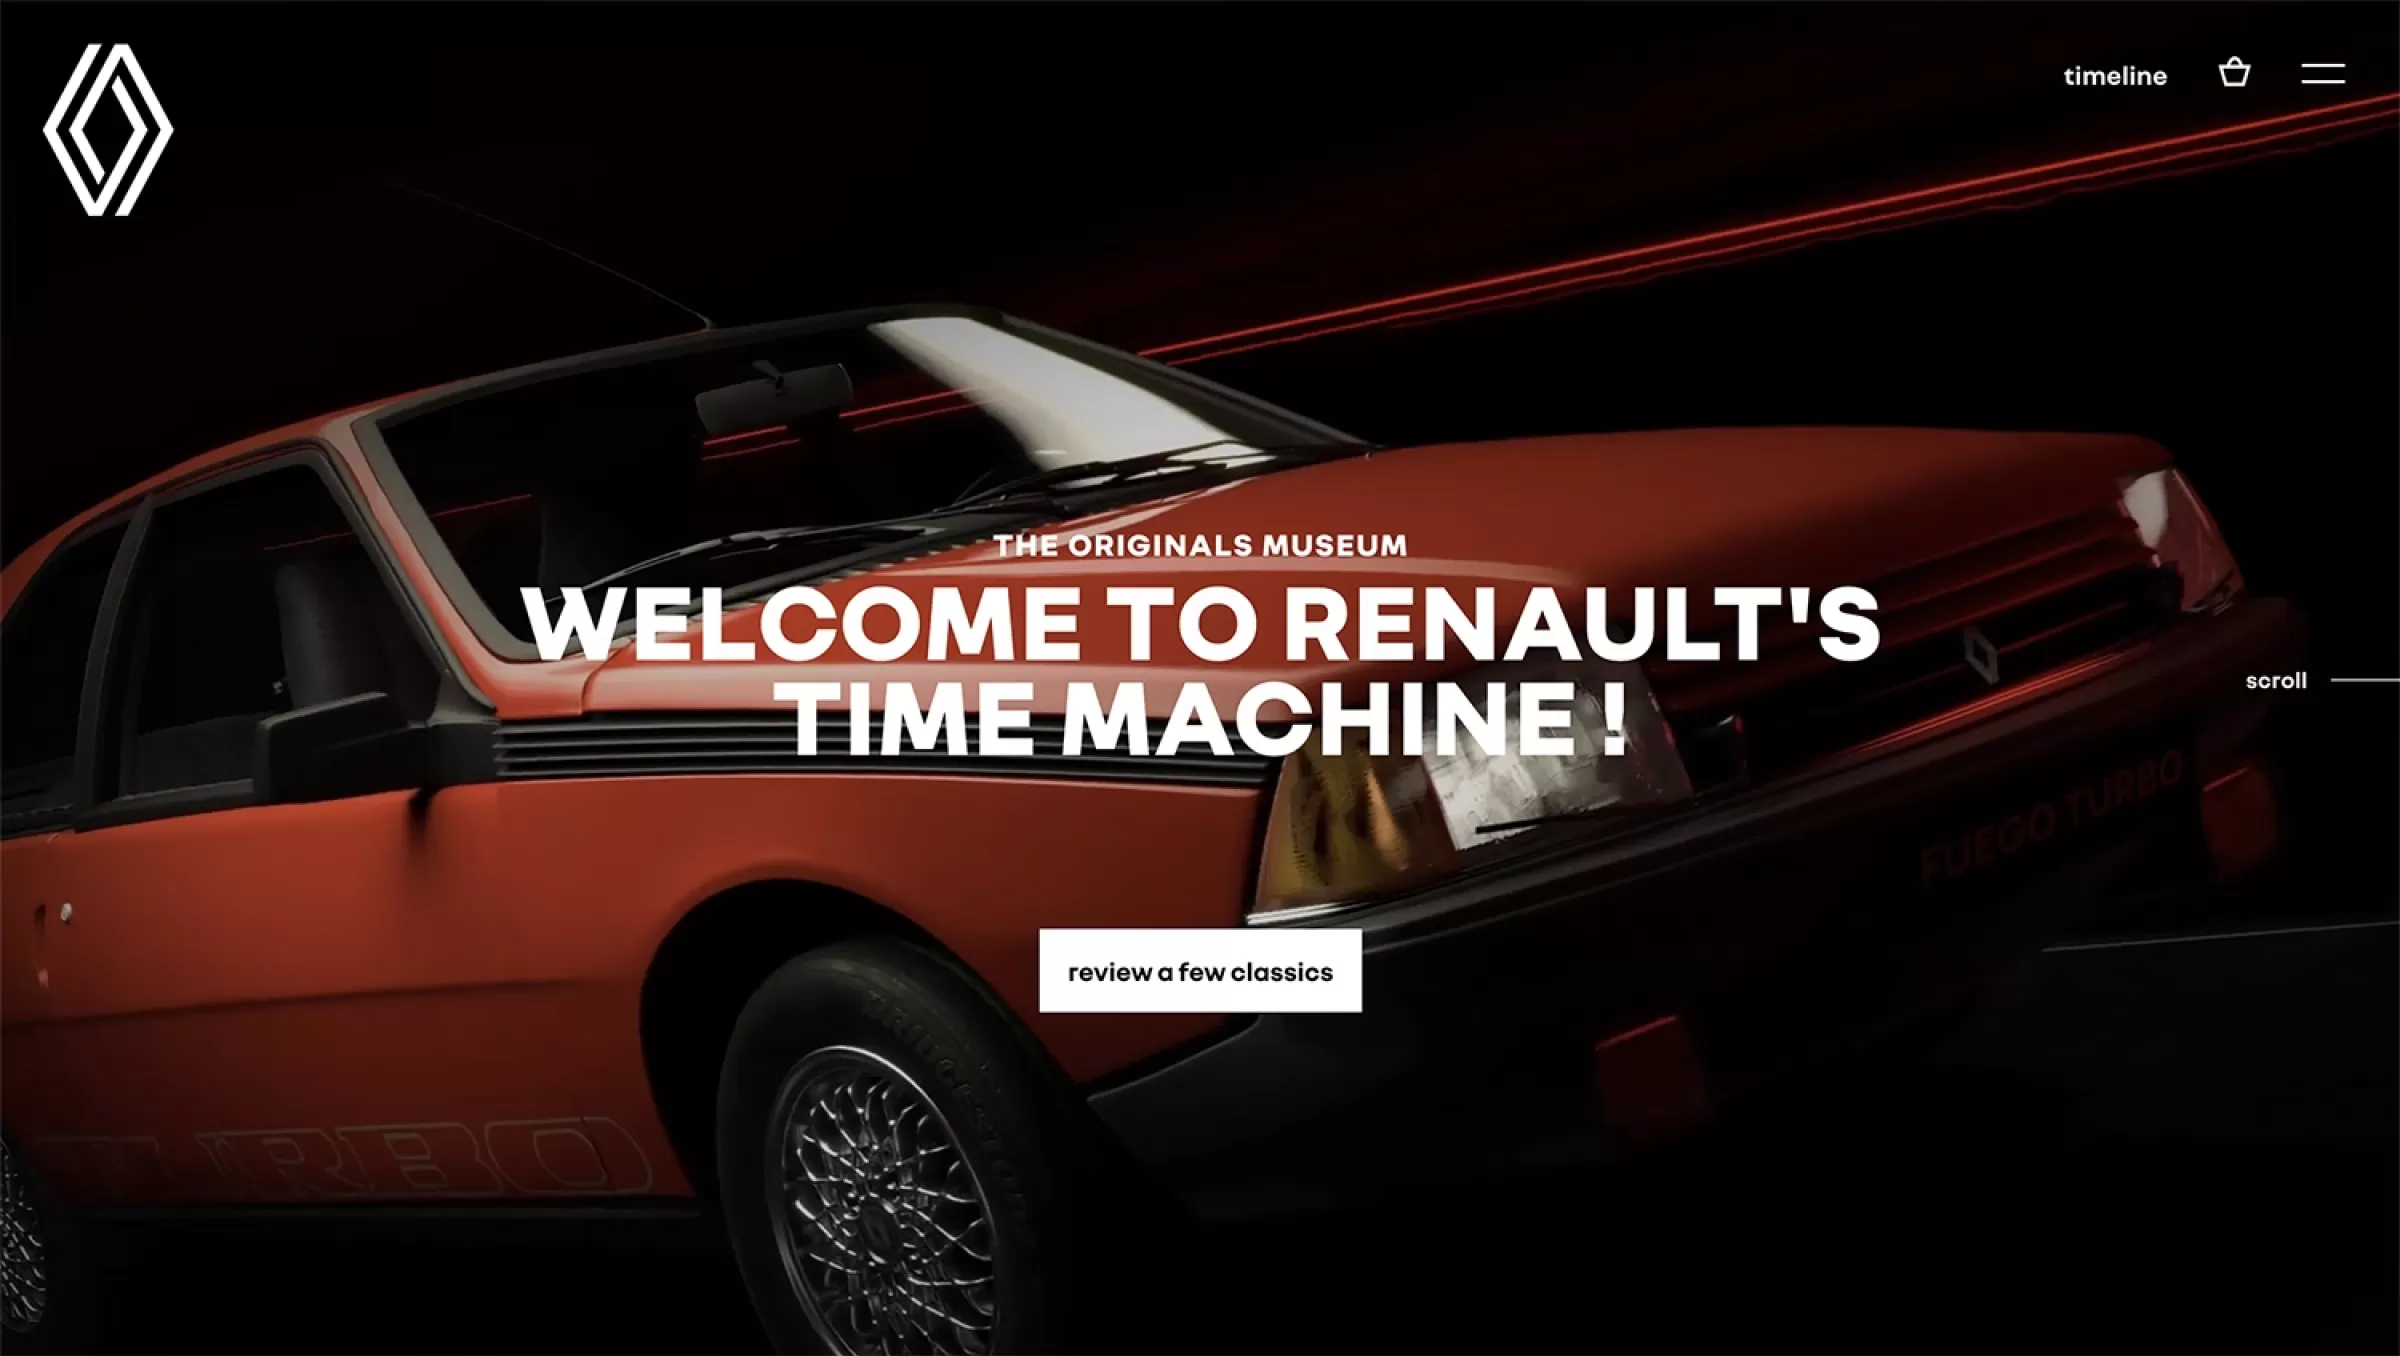 The Originals Museum Renault